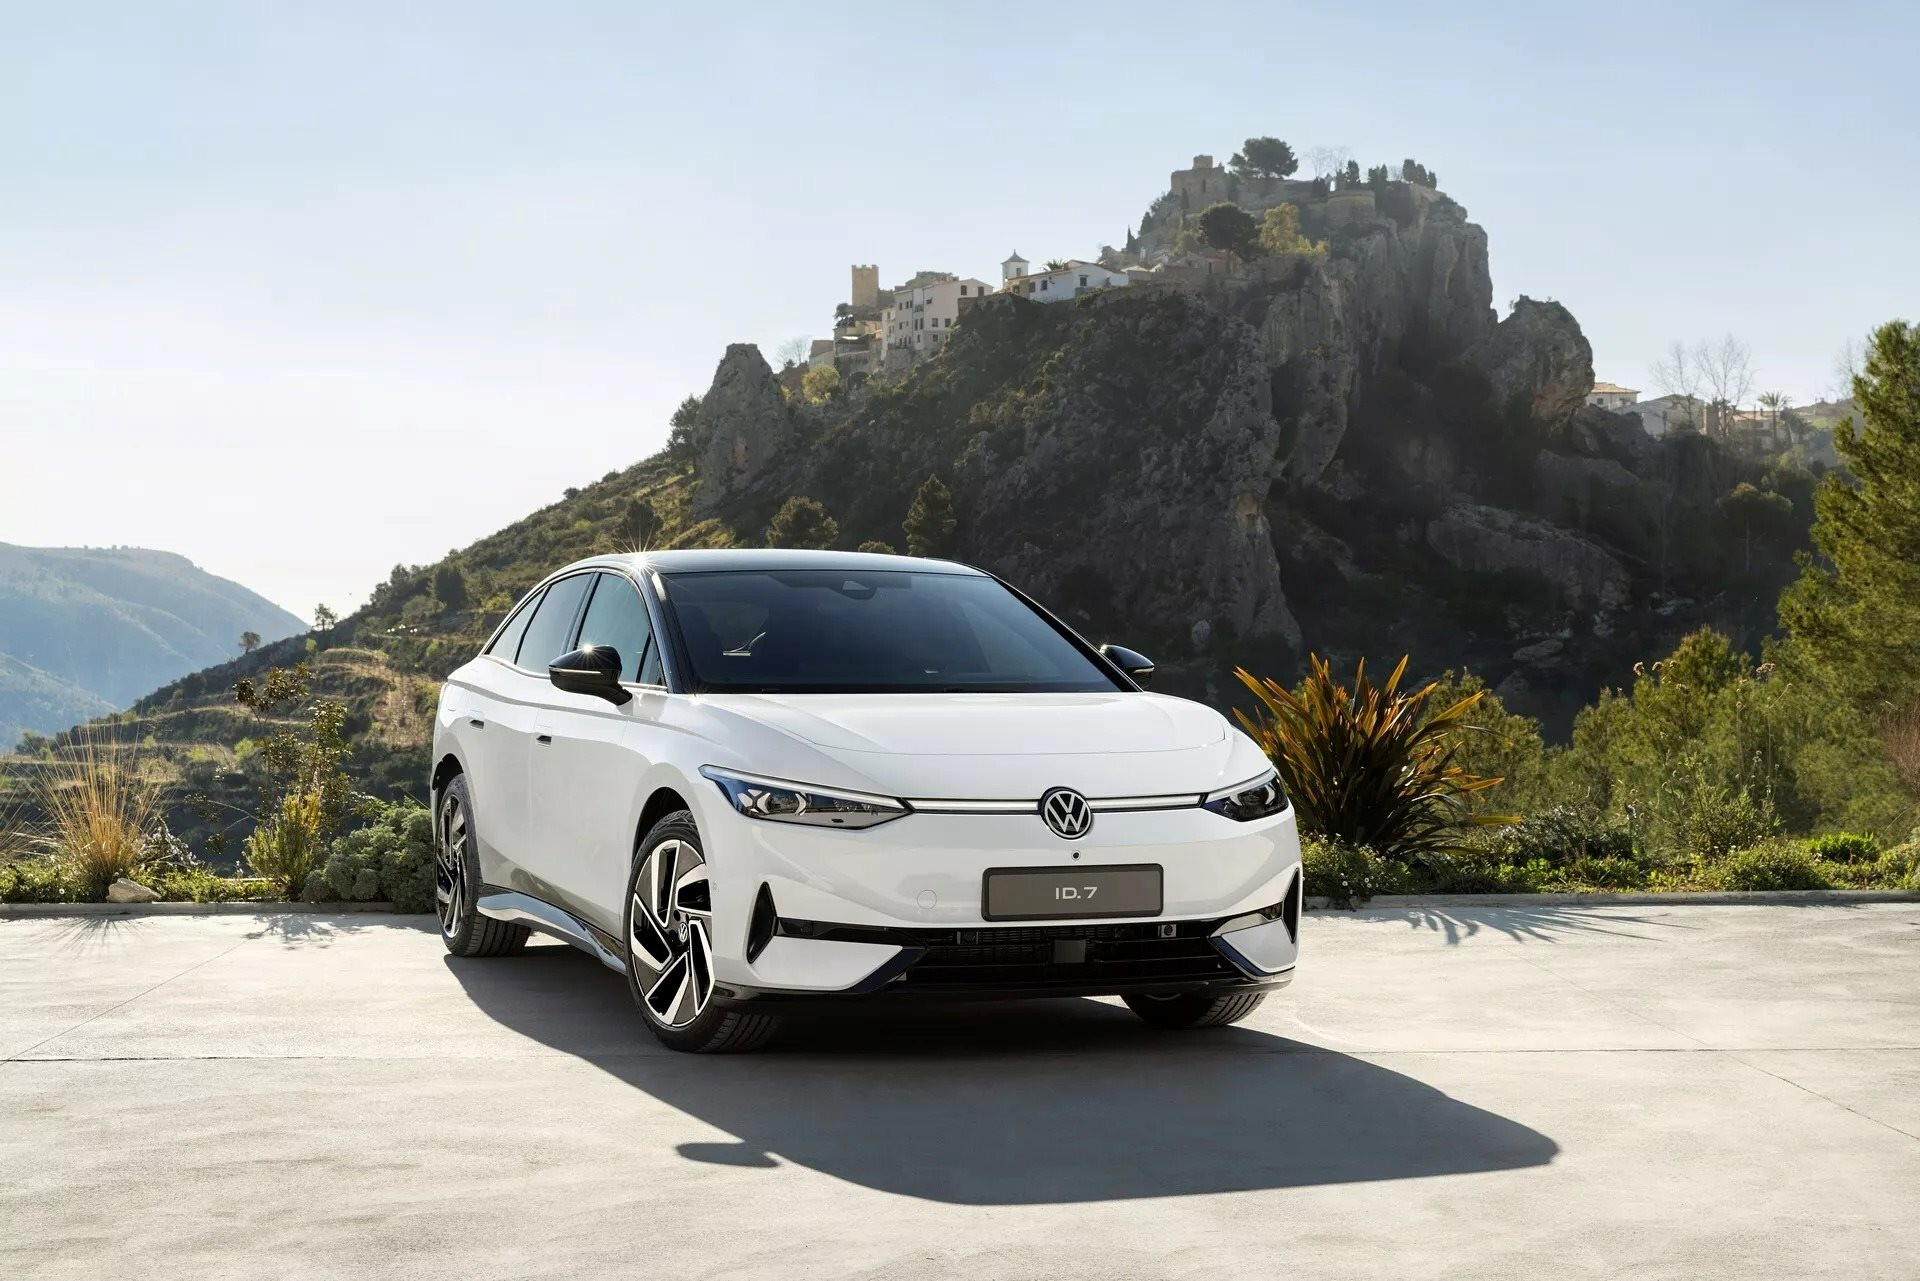 Nếu có ý định mua một chiếc ô tô điện trong 2 năm tới, bạn sẽ hối tiếc nếu bỏ qua mẫu Volkswagen đẹp ‘không tì vết’, tầm hoạt động lên đến 700 km này - Ảnh 1.